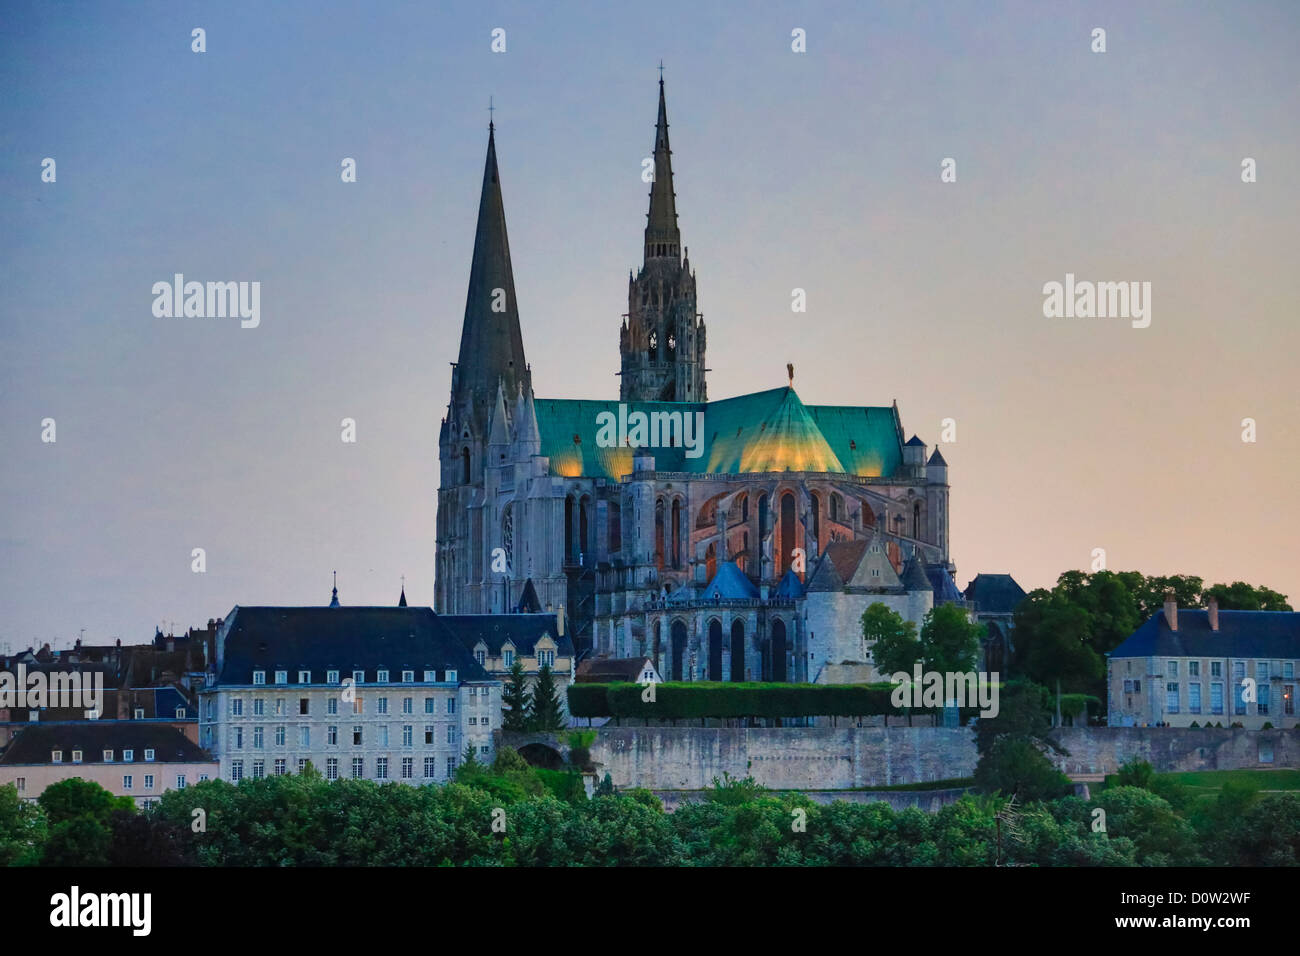 France, Europe, voyage, Chartres, cathédrale, patrimoine mondial, l'architecture, l'histoire, cité médiévale, tourisme, Unesco Banque D'Images